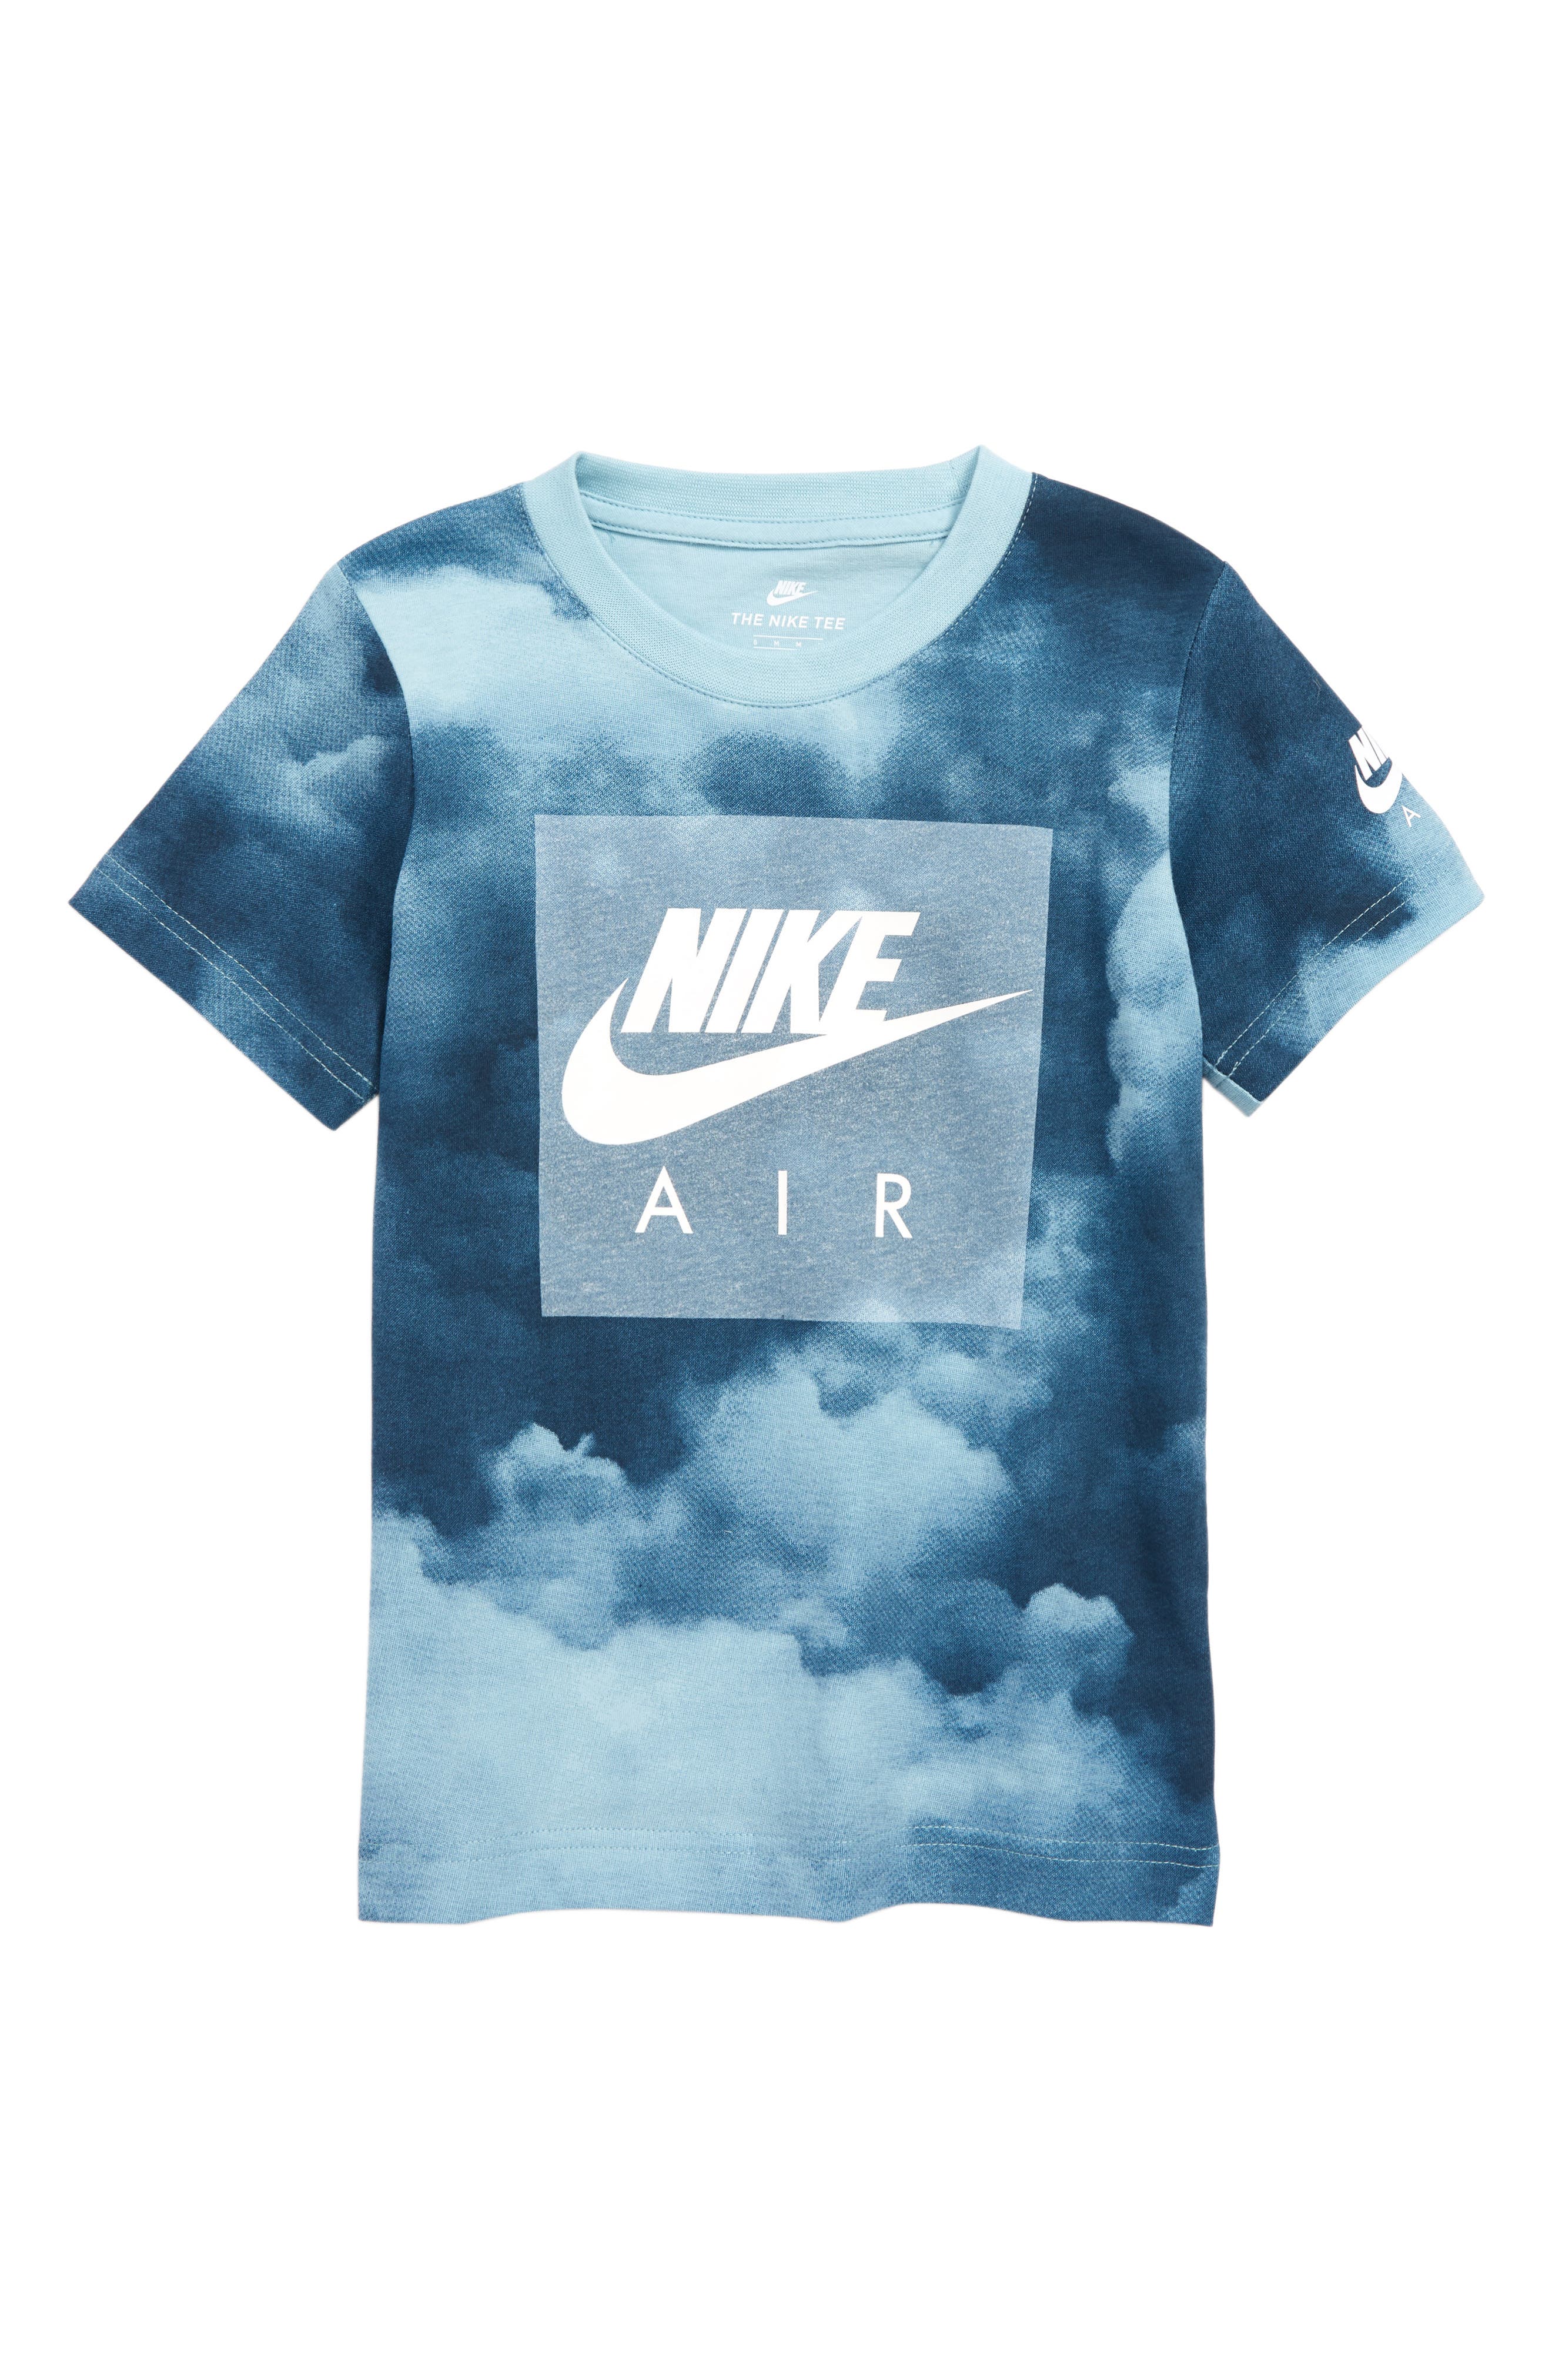 nike air cloud shirt